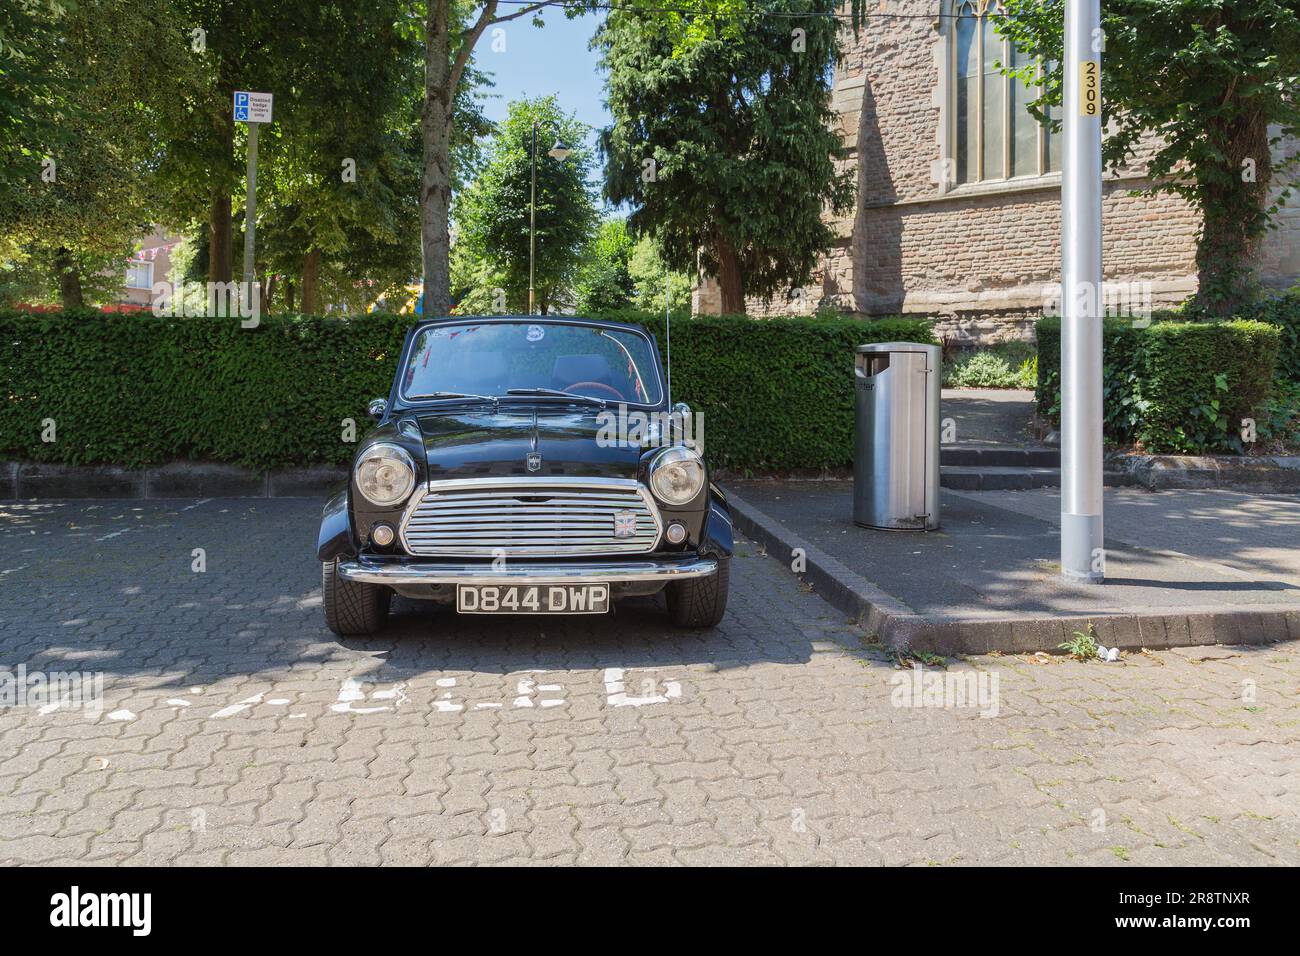 Una Austin Mini parcheggiata. La Mini originale è un'icona della cultura britannica degli anni '1960 ed è stata votata la seconda auto più influente del XX secolo. Foto Stock